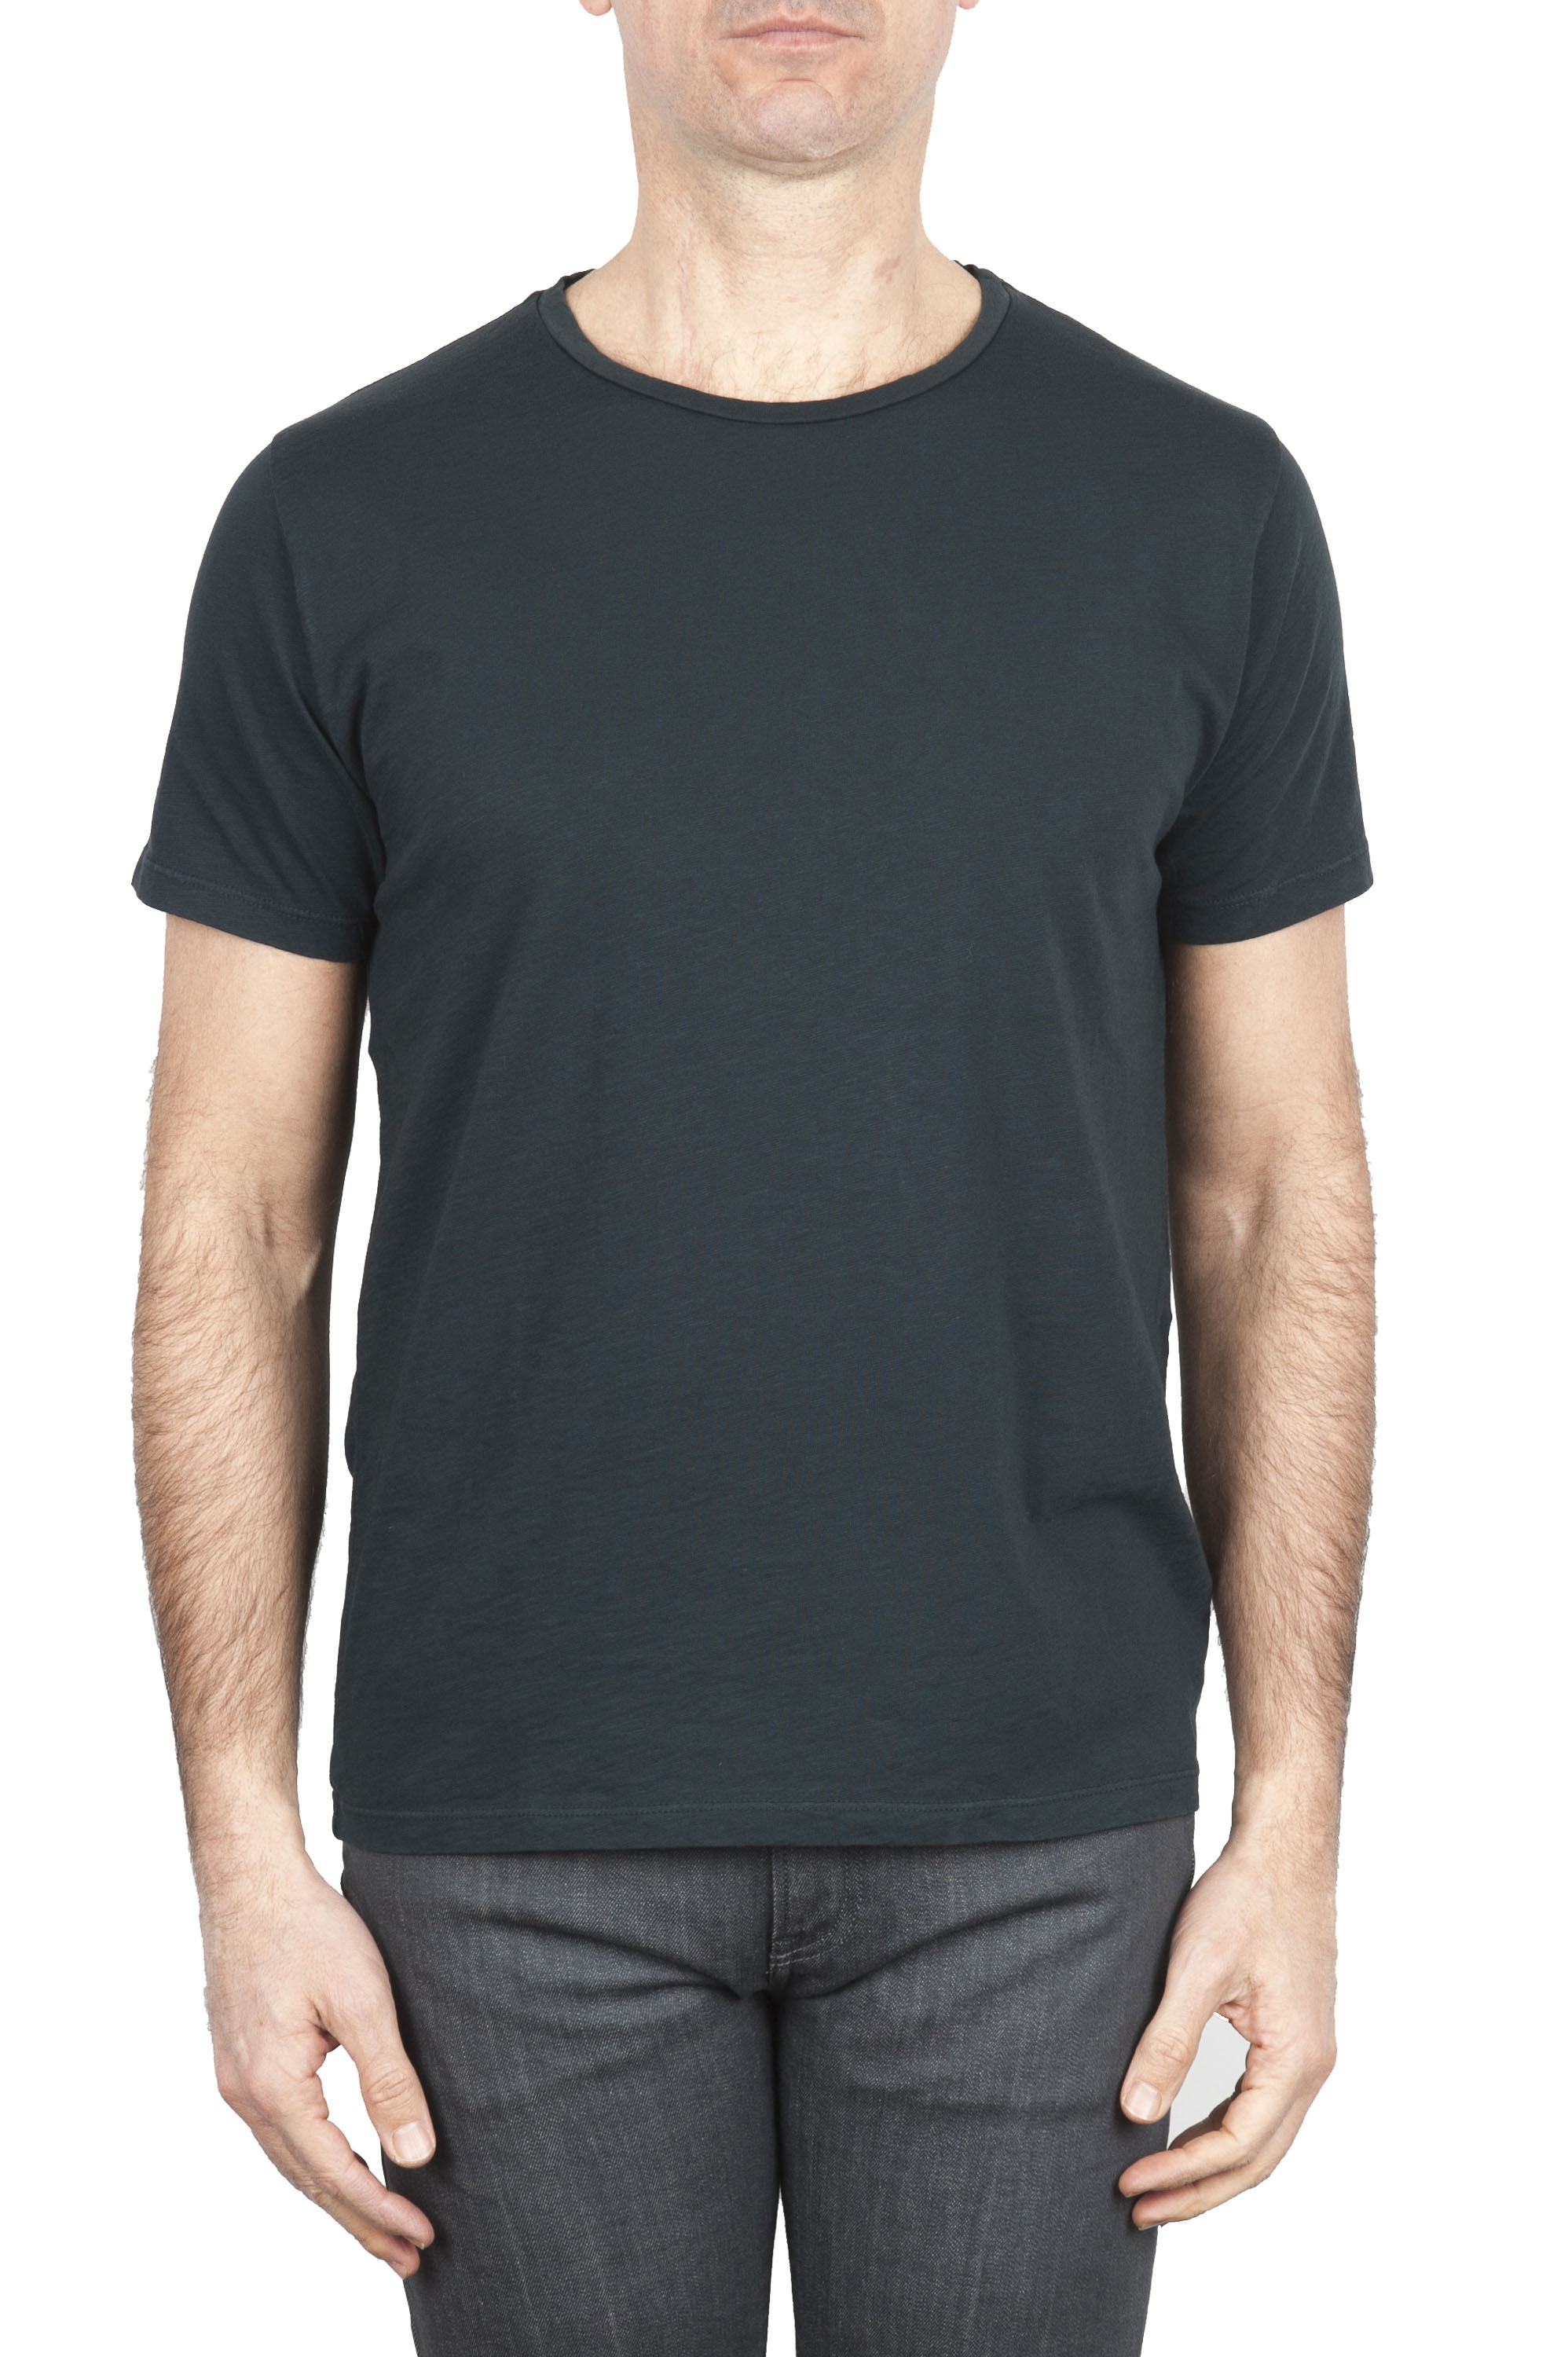 SBU 01636 T-shirt girocollo aperto in cotone fiammato antracite 01